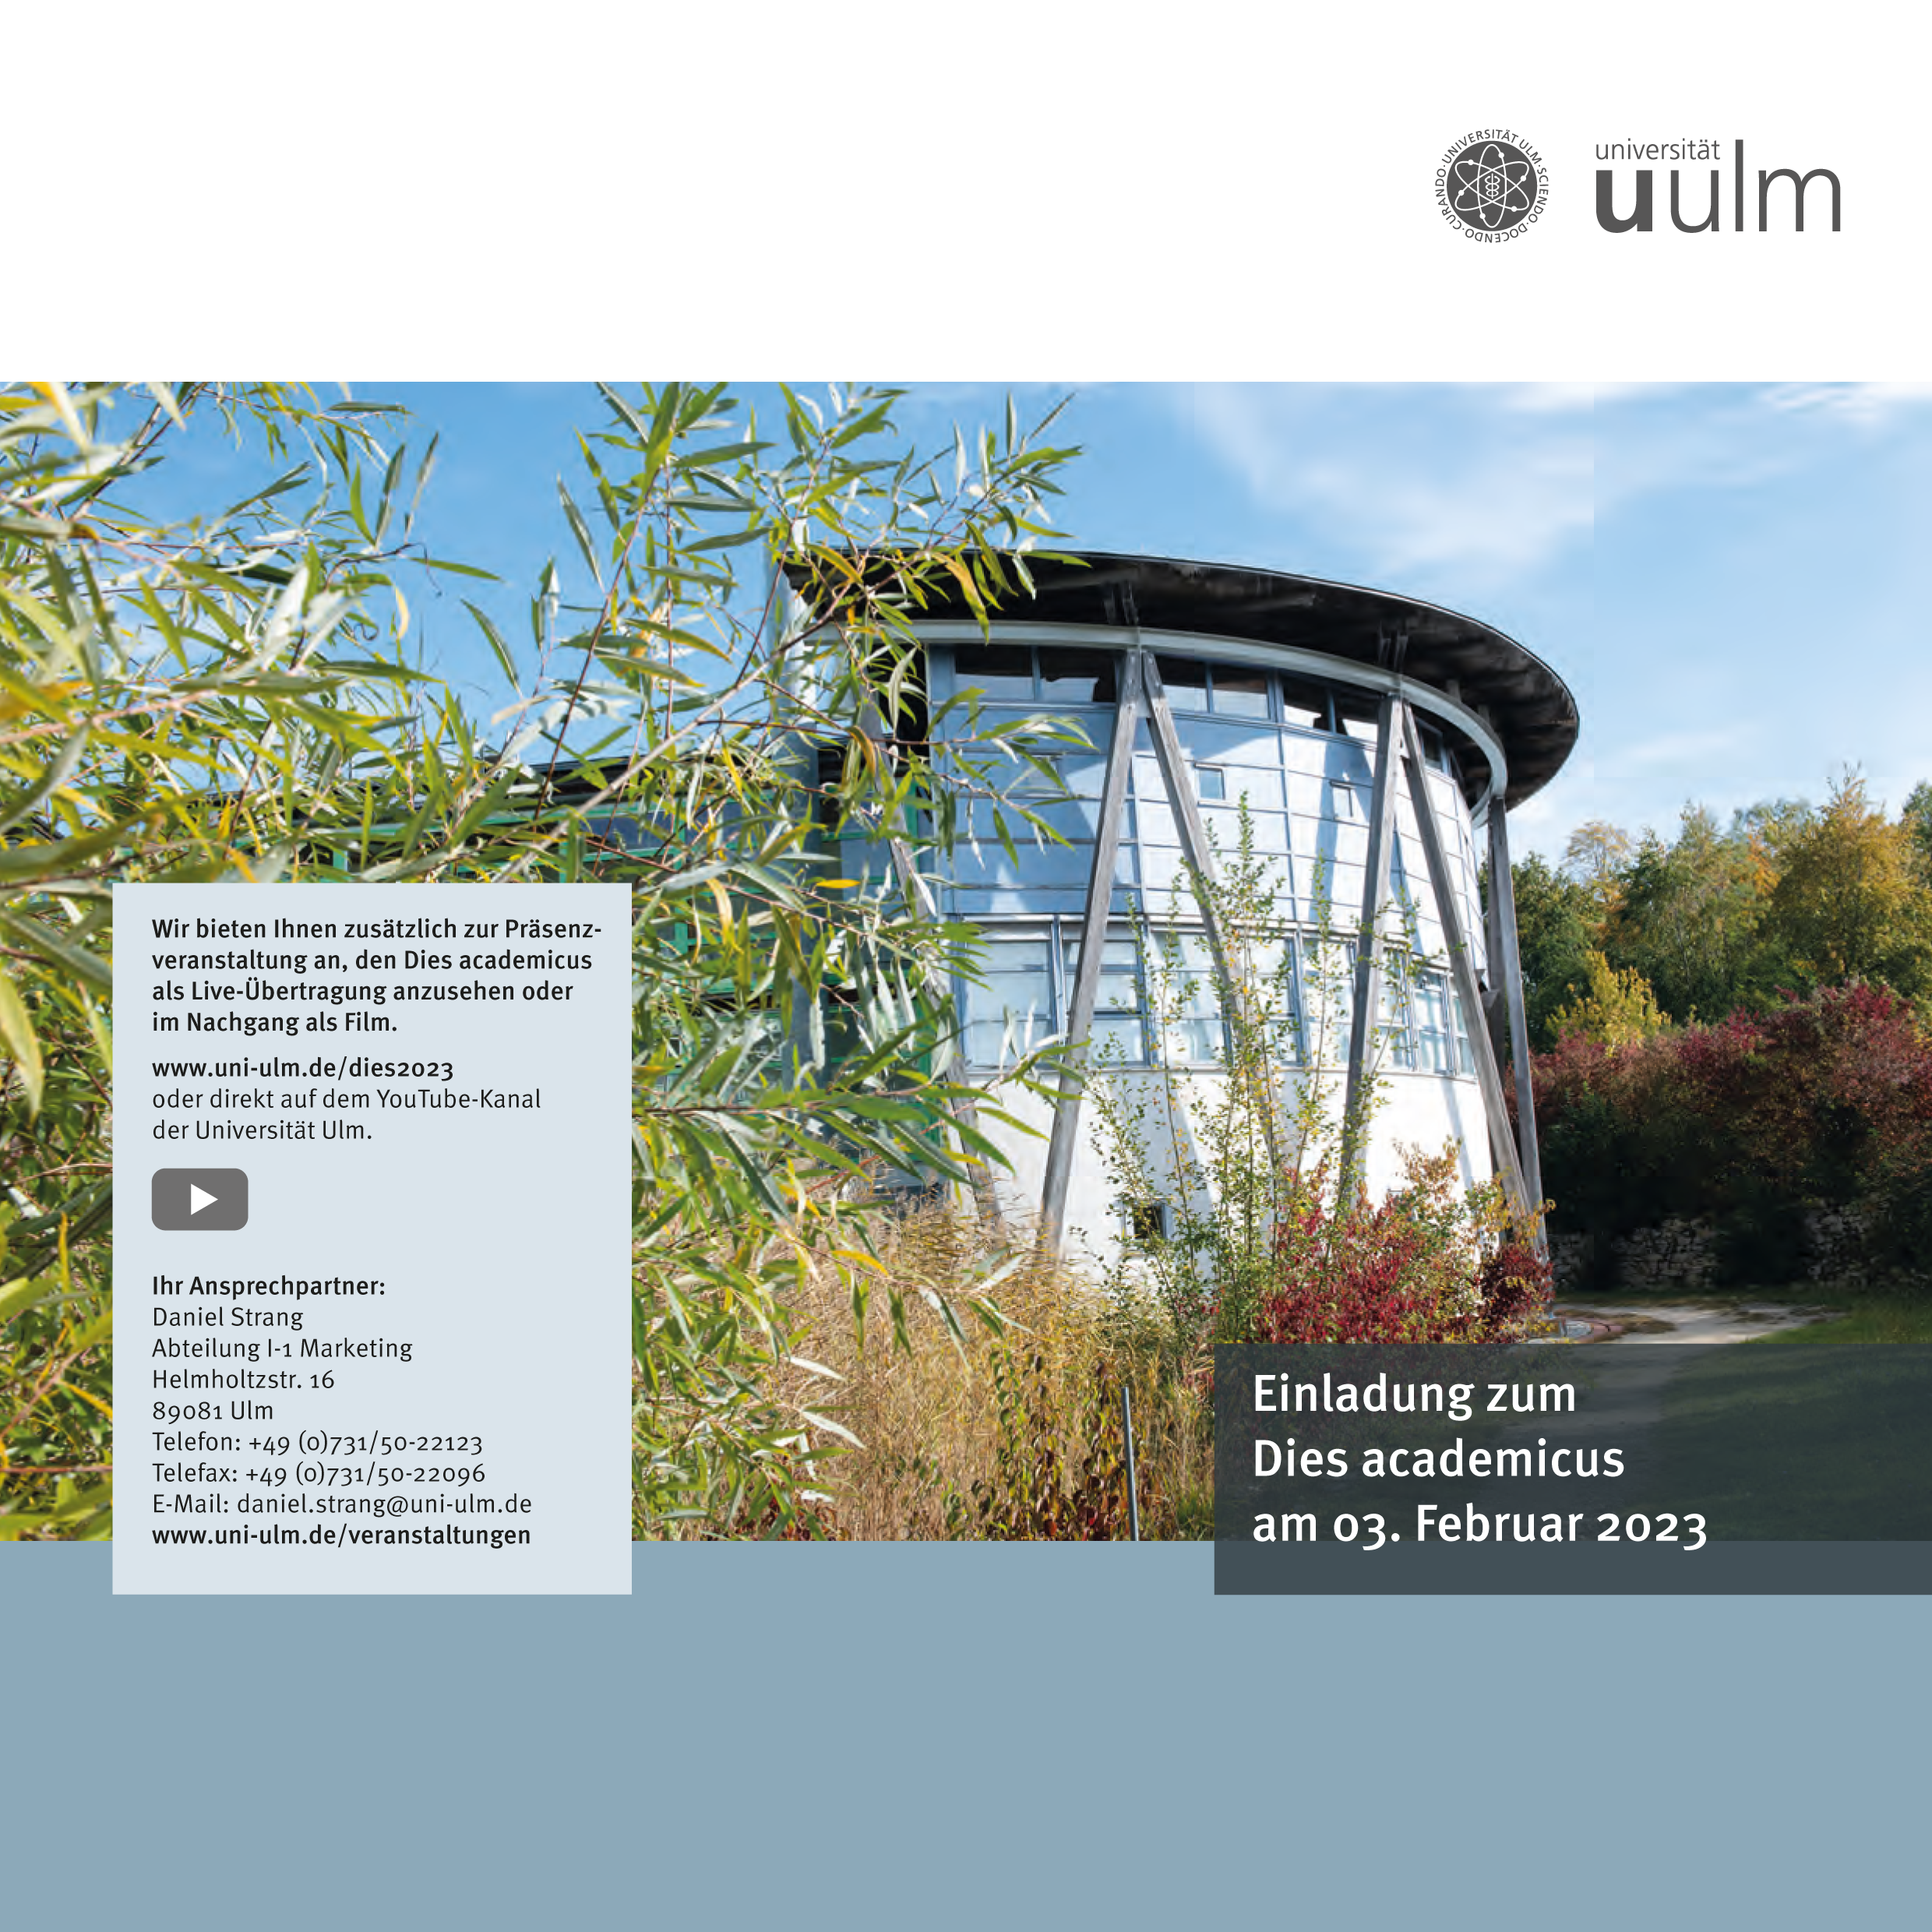 Einladung zum Dies academicus der Universität Ulm am 03.02.2023. Bild klicken für PDF Download.